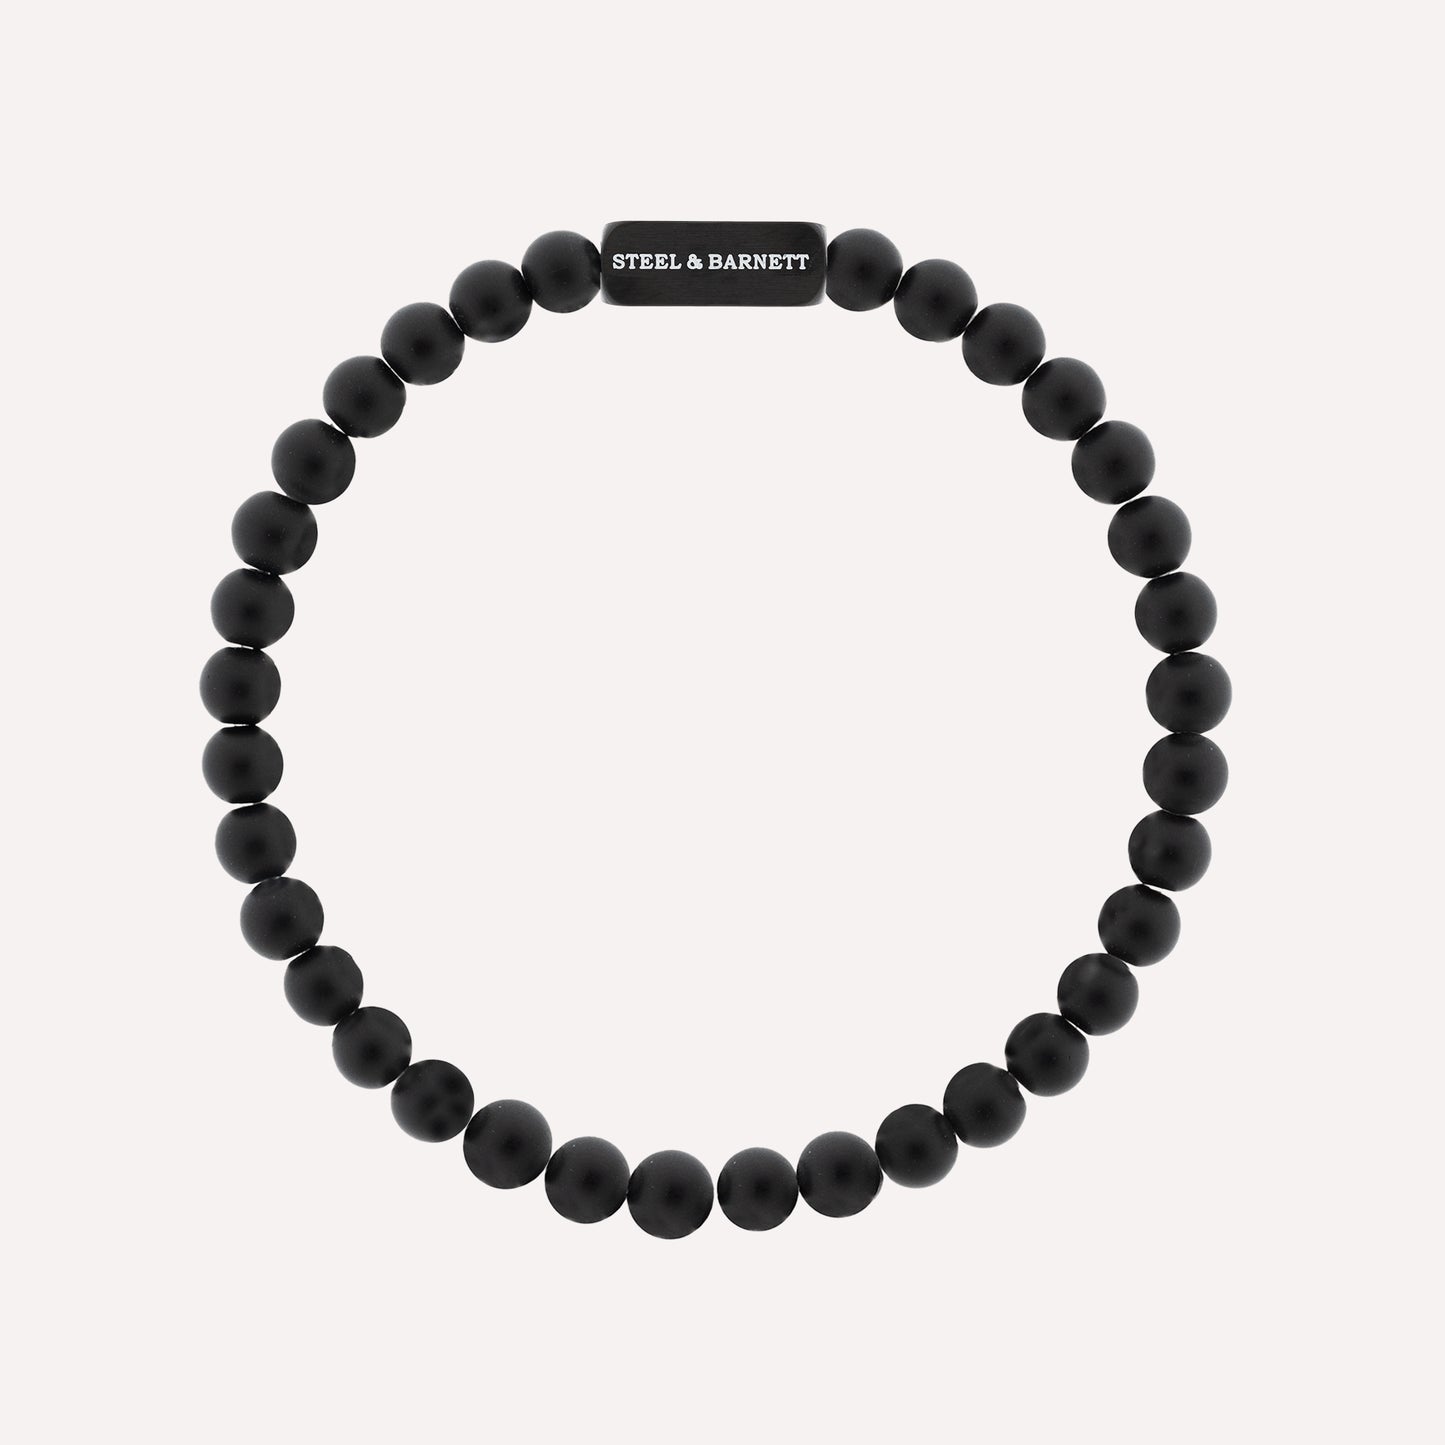 all black bracelet stone bracelet Black Edition 6mm Round Gemstone Bracelet Natural Ned for men steel and barnett